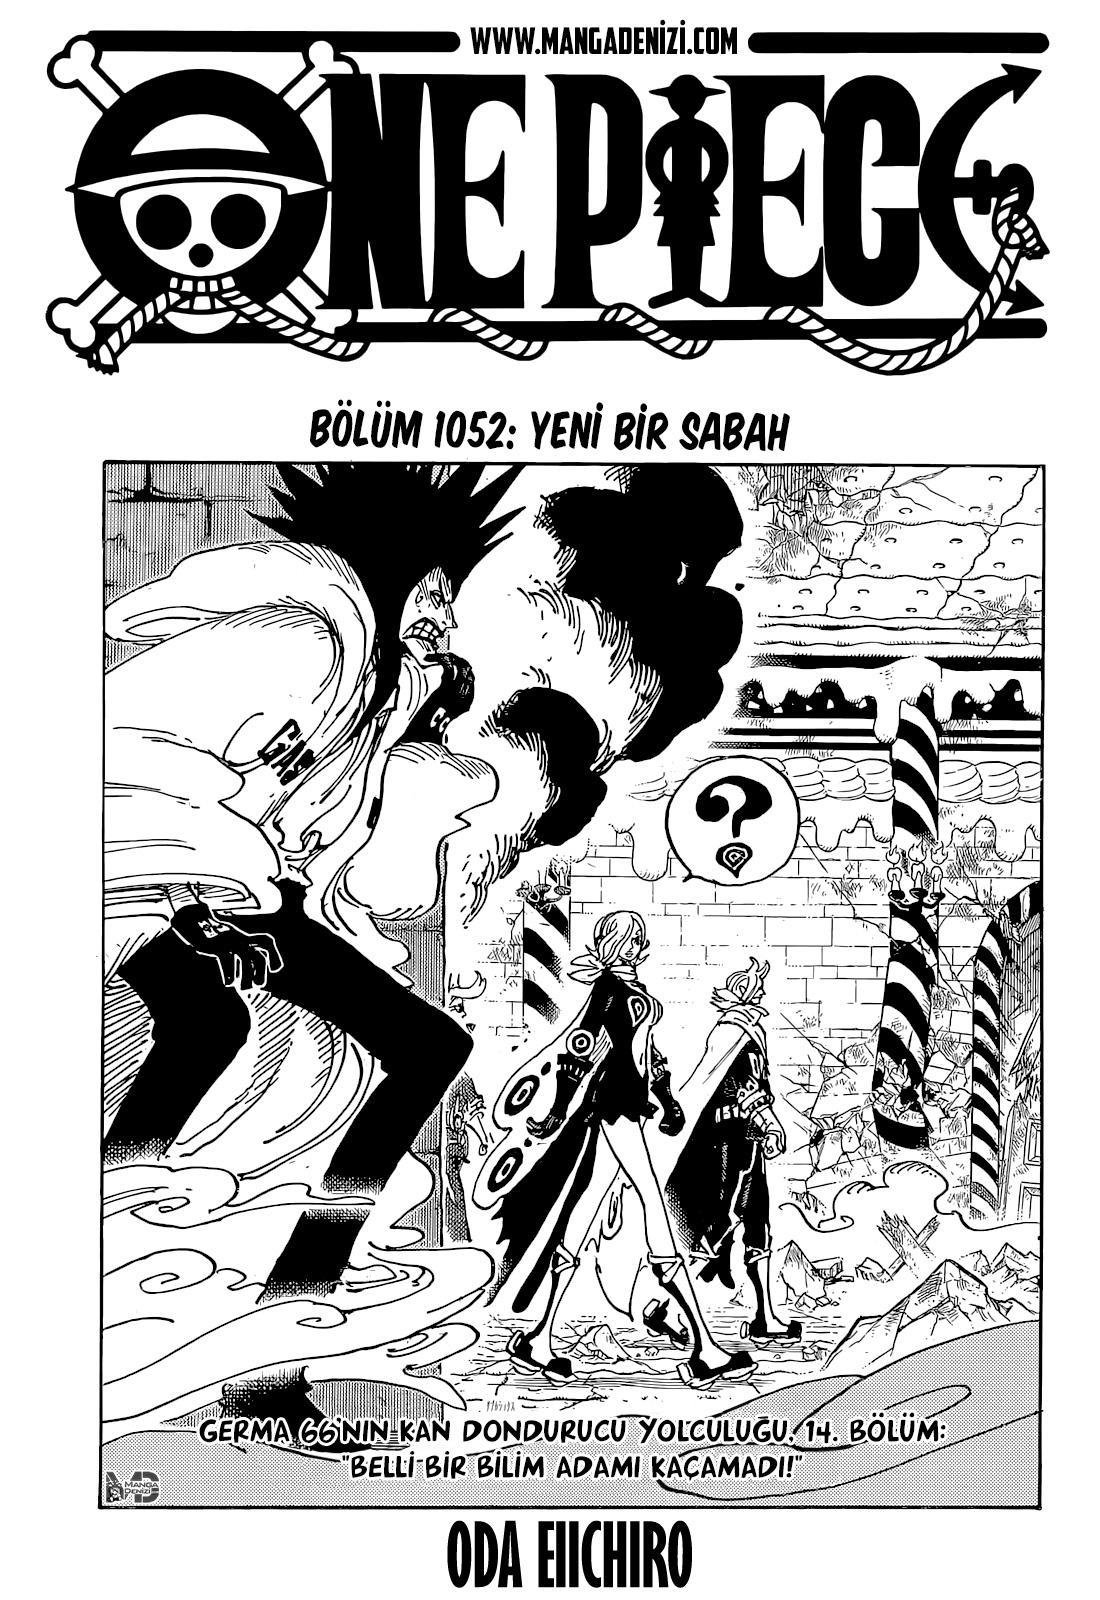 One Piece mangasının 1052 bölümünün 2. sayfasını okuyorsunuz.